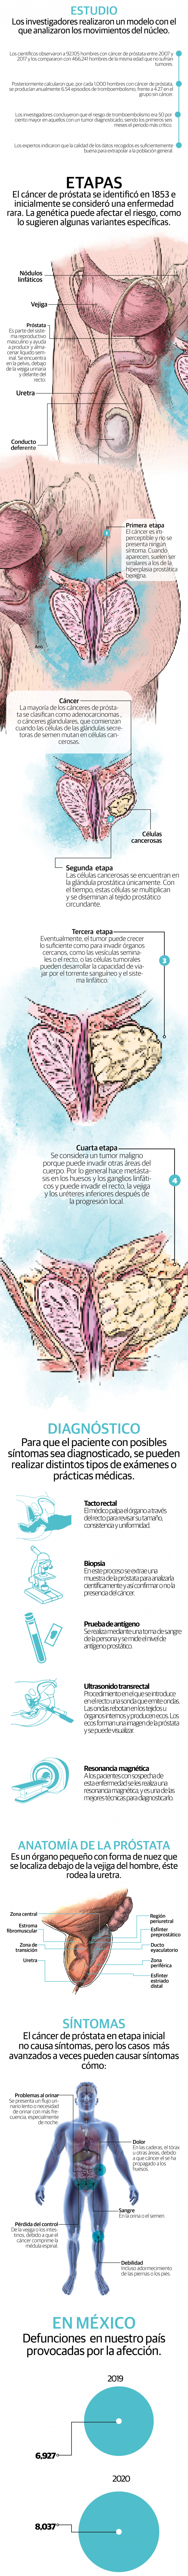 Cáncer de próstata; descubren mayor riesgo de trombo grave en los 5 primeros años tras diagnóstico